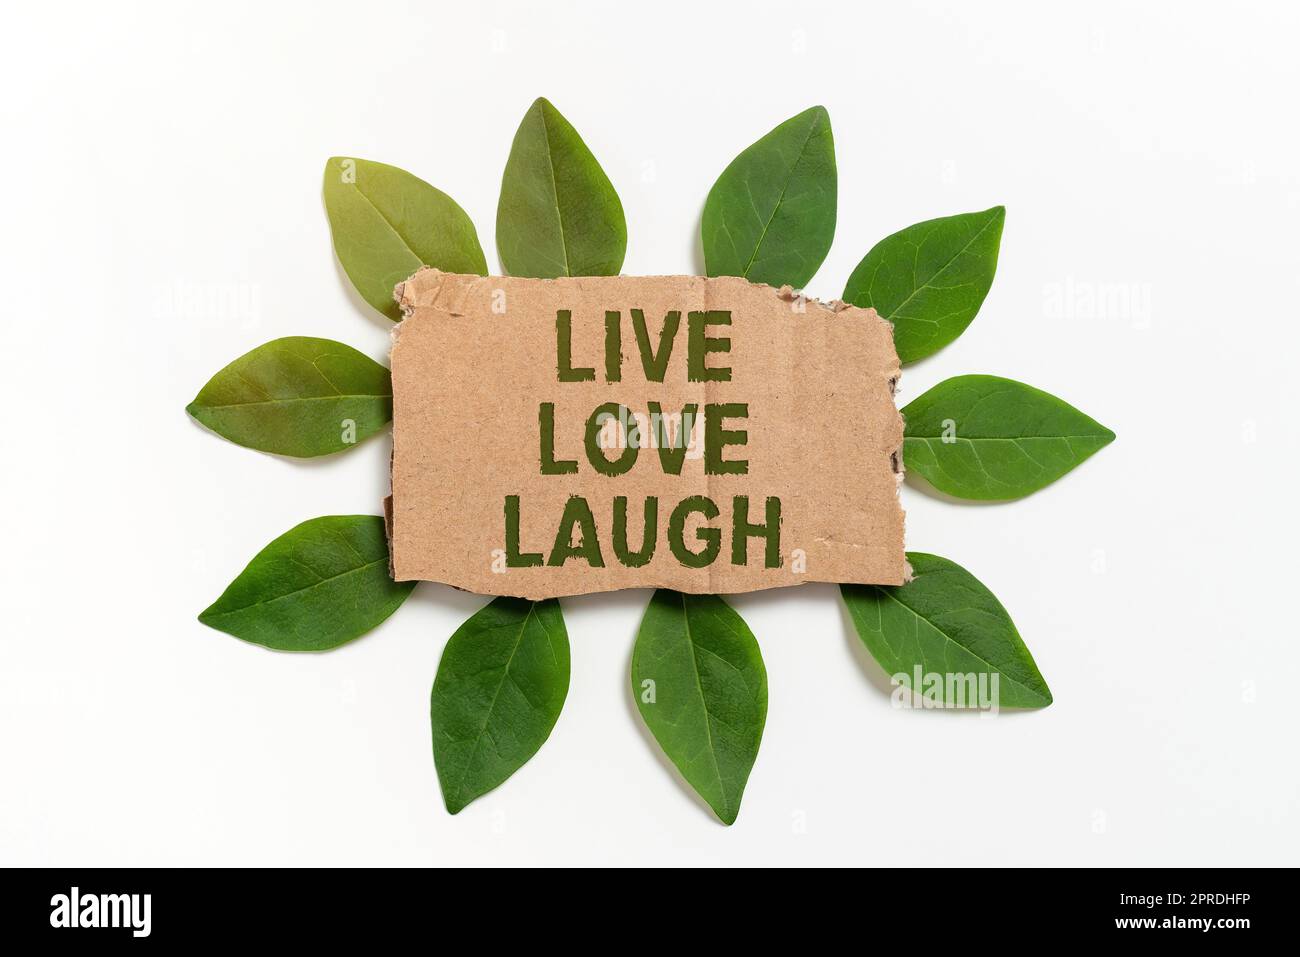 Légende conceptuelle Live Love Laugh. Mot pour être inspiré positif Profitez de vos jours riant bonne humeur carton blanc papier entouré de feuilles pour carte d'invitation. Banque D'Images